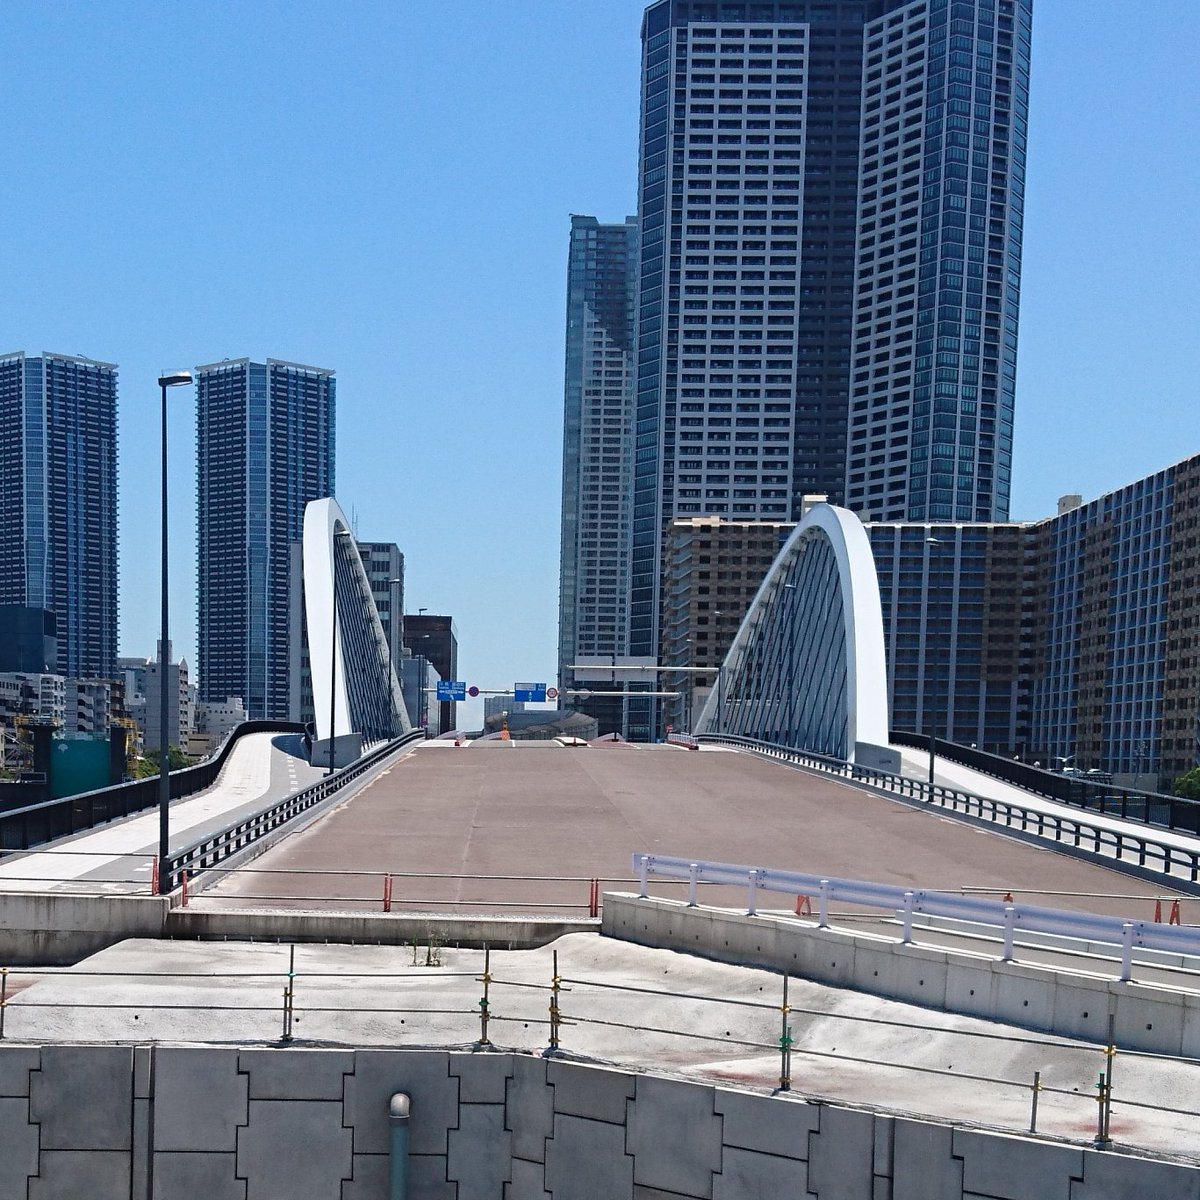 ট ইট র 生田よしかつ 築地大橋 そーです いまだに使われていない環状2号線ってやつです 築地市場の中から撮った写真です もったいない